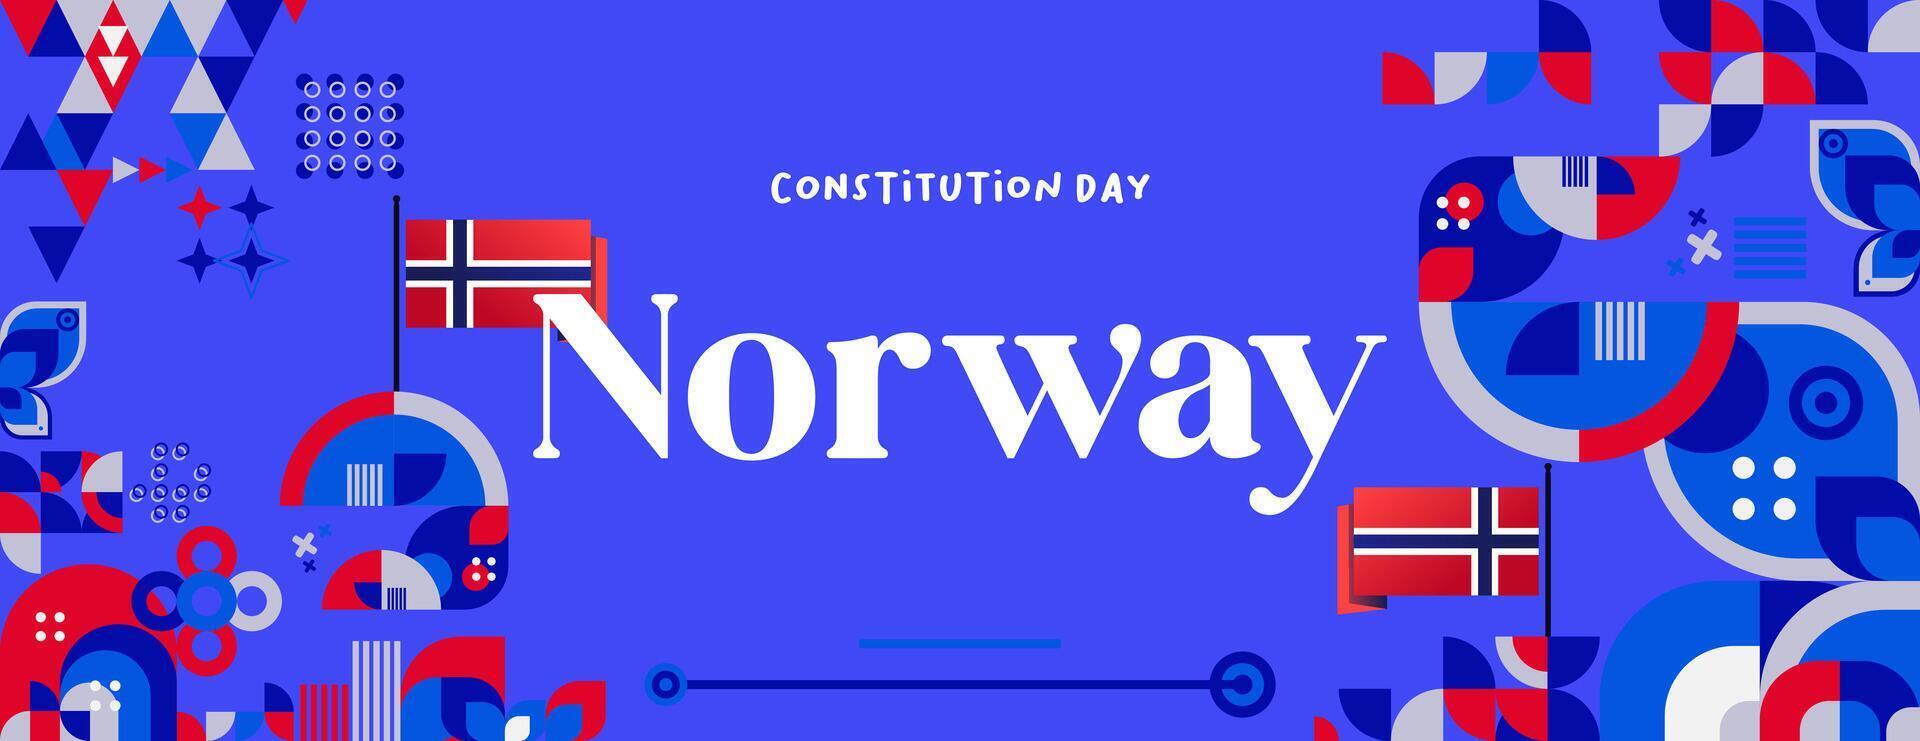 norvegese costituzione giorno bandiera nel colorato moderno geometrico stile. contento Norvegia nazionale indipendenza giorno saluto carta copertina con tipografia. vettore illustrazione per festeggiare nazionale vacanze